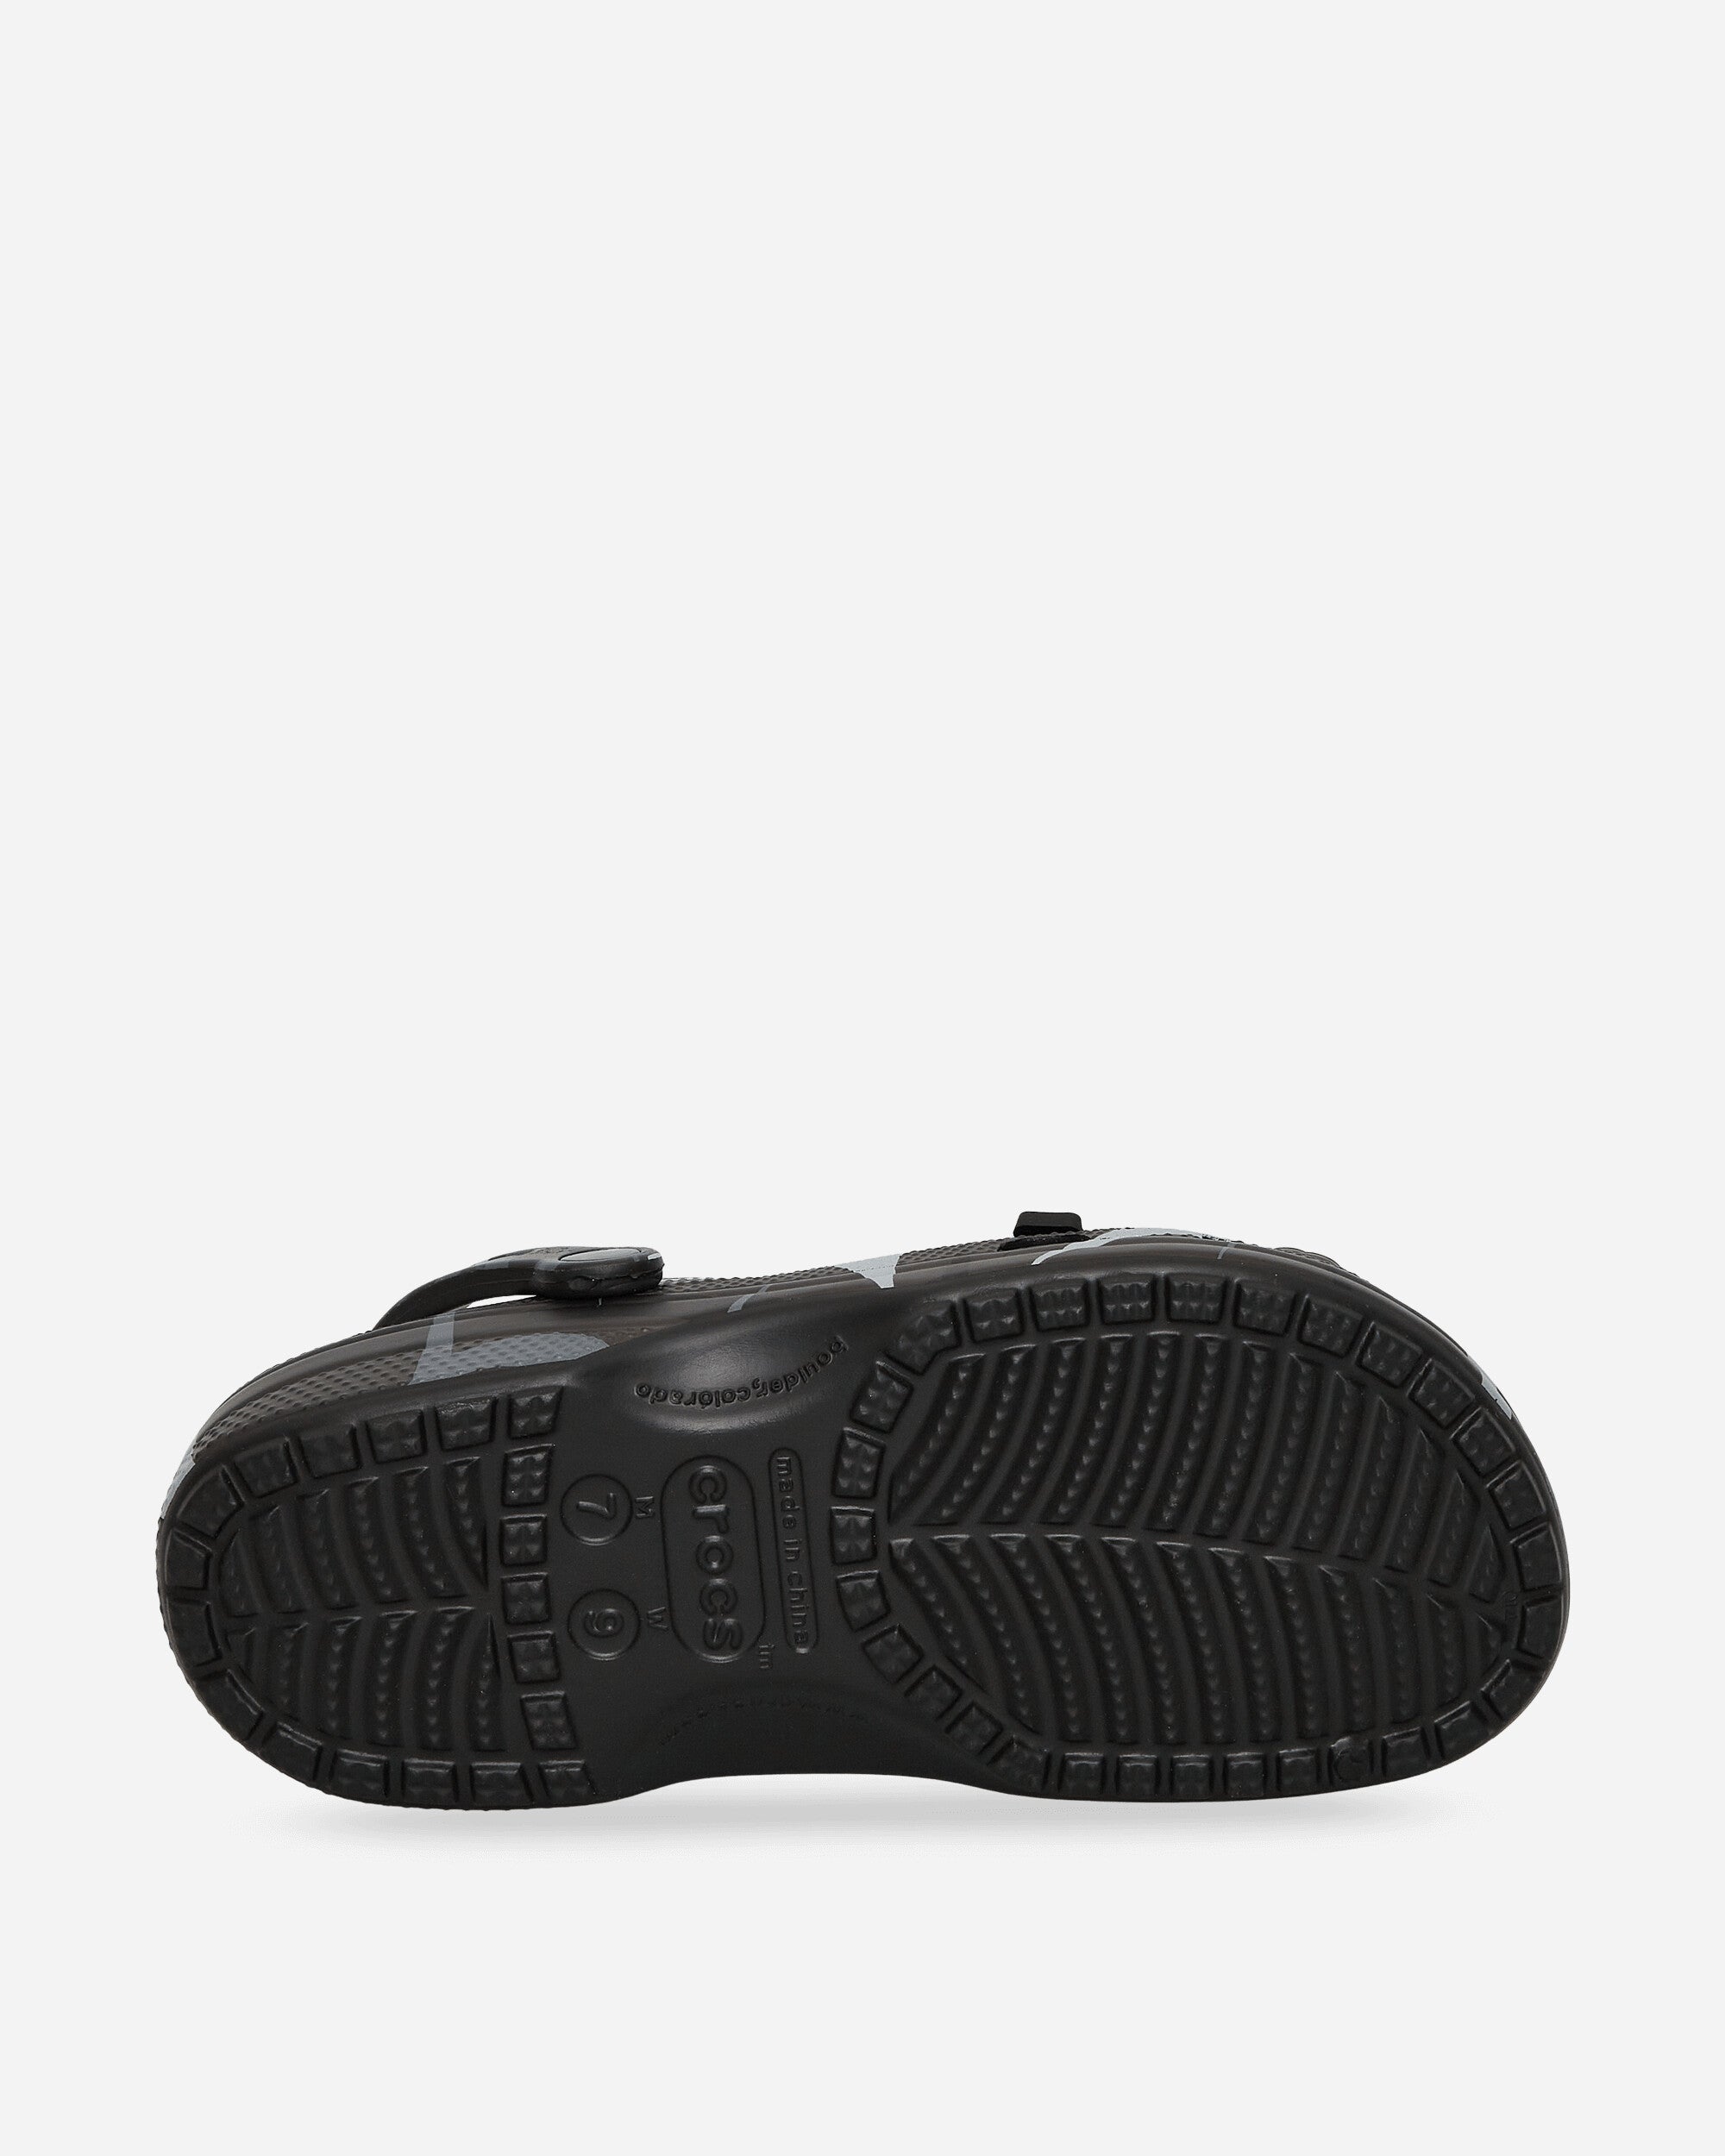 Crocs Clot X Crocs Classic Clog Black Sandals and Slides Sandals and Mules 208700 001